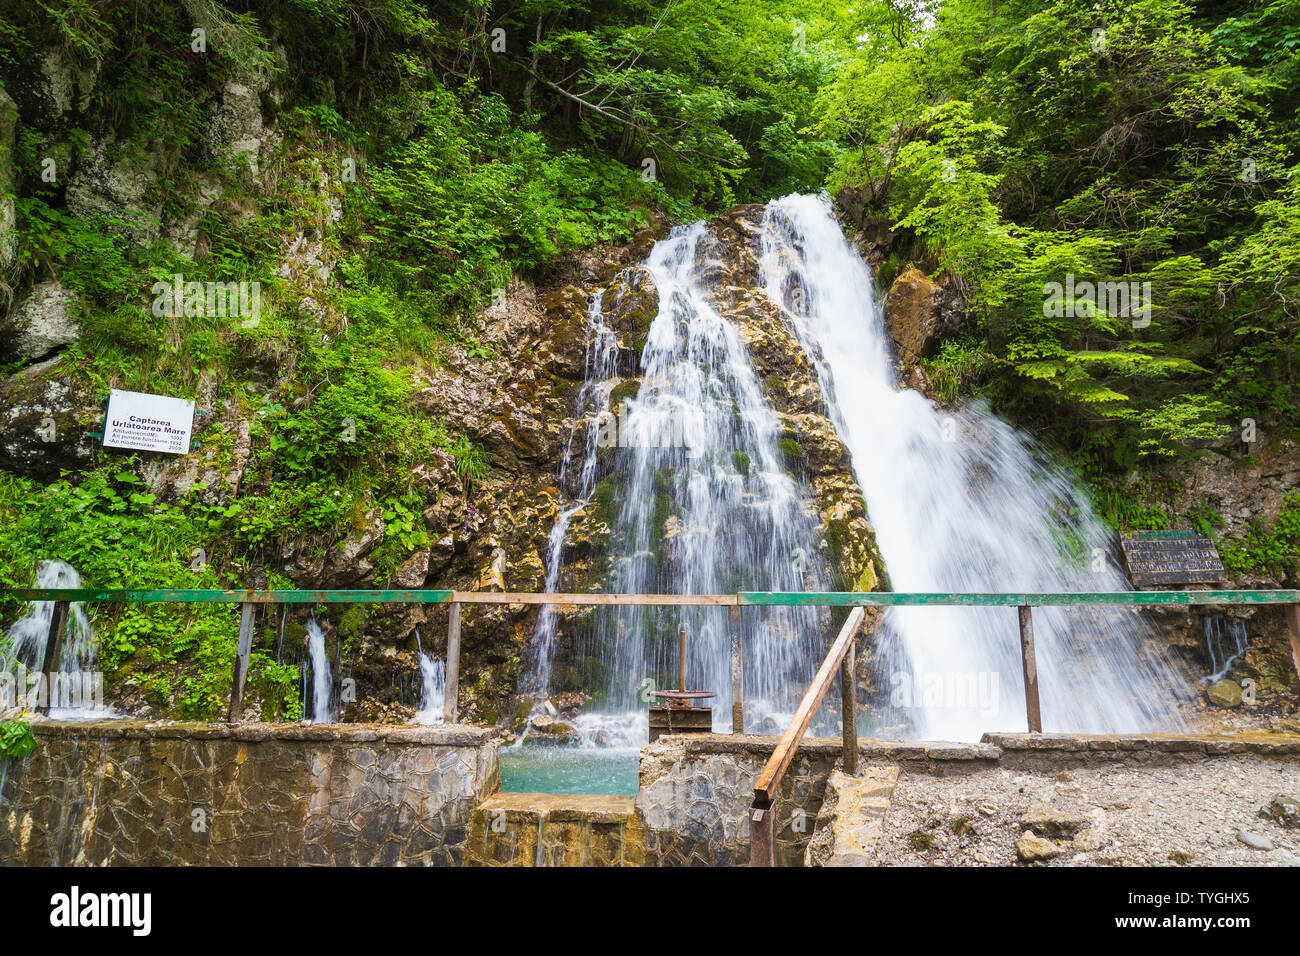 Waterfall Urlatoarea from Bucegi Natural Park, Romania Stock Photo